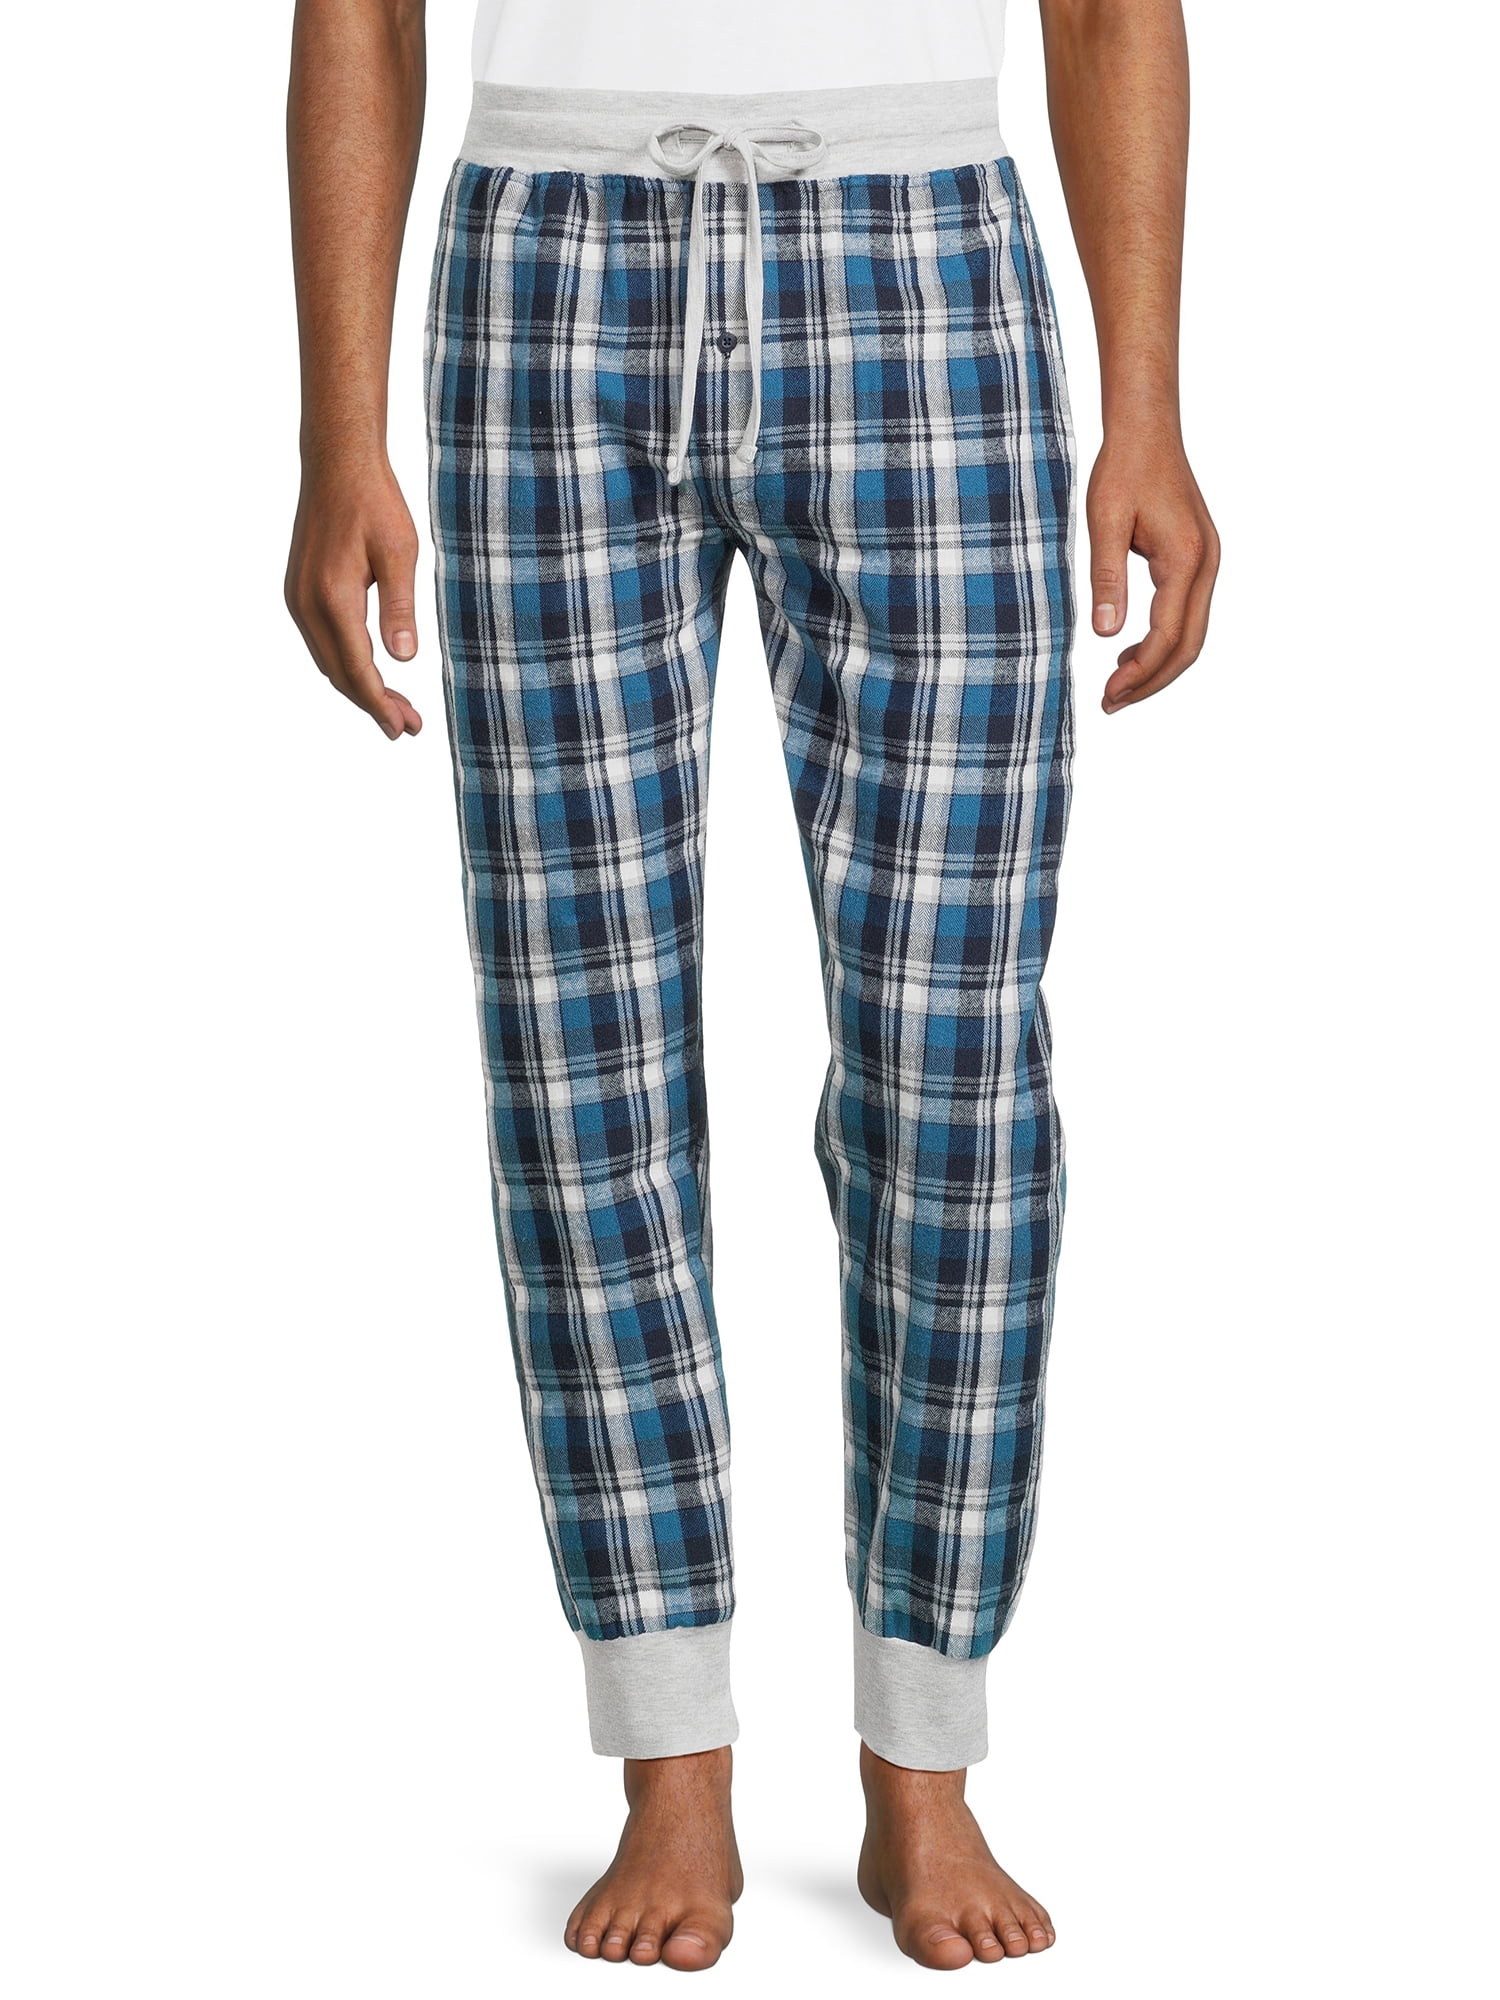 Hanes Originals Men's Soft Flannel Joggers, Sizes S-2XL - Walmart.com